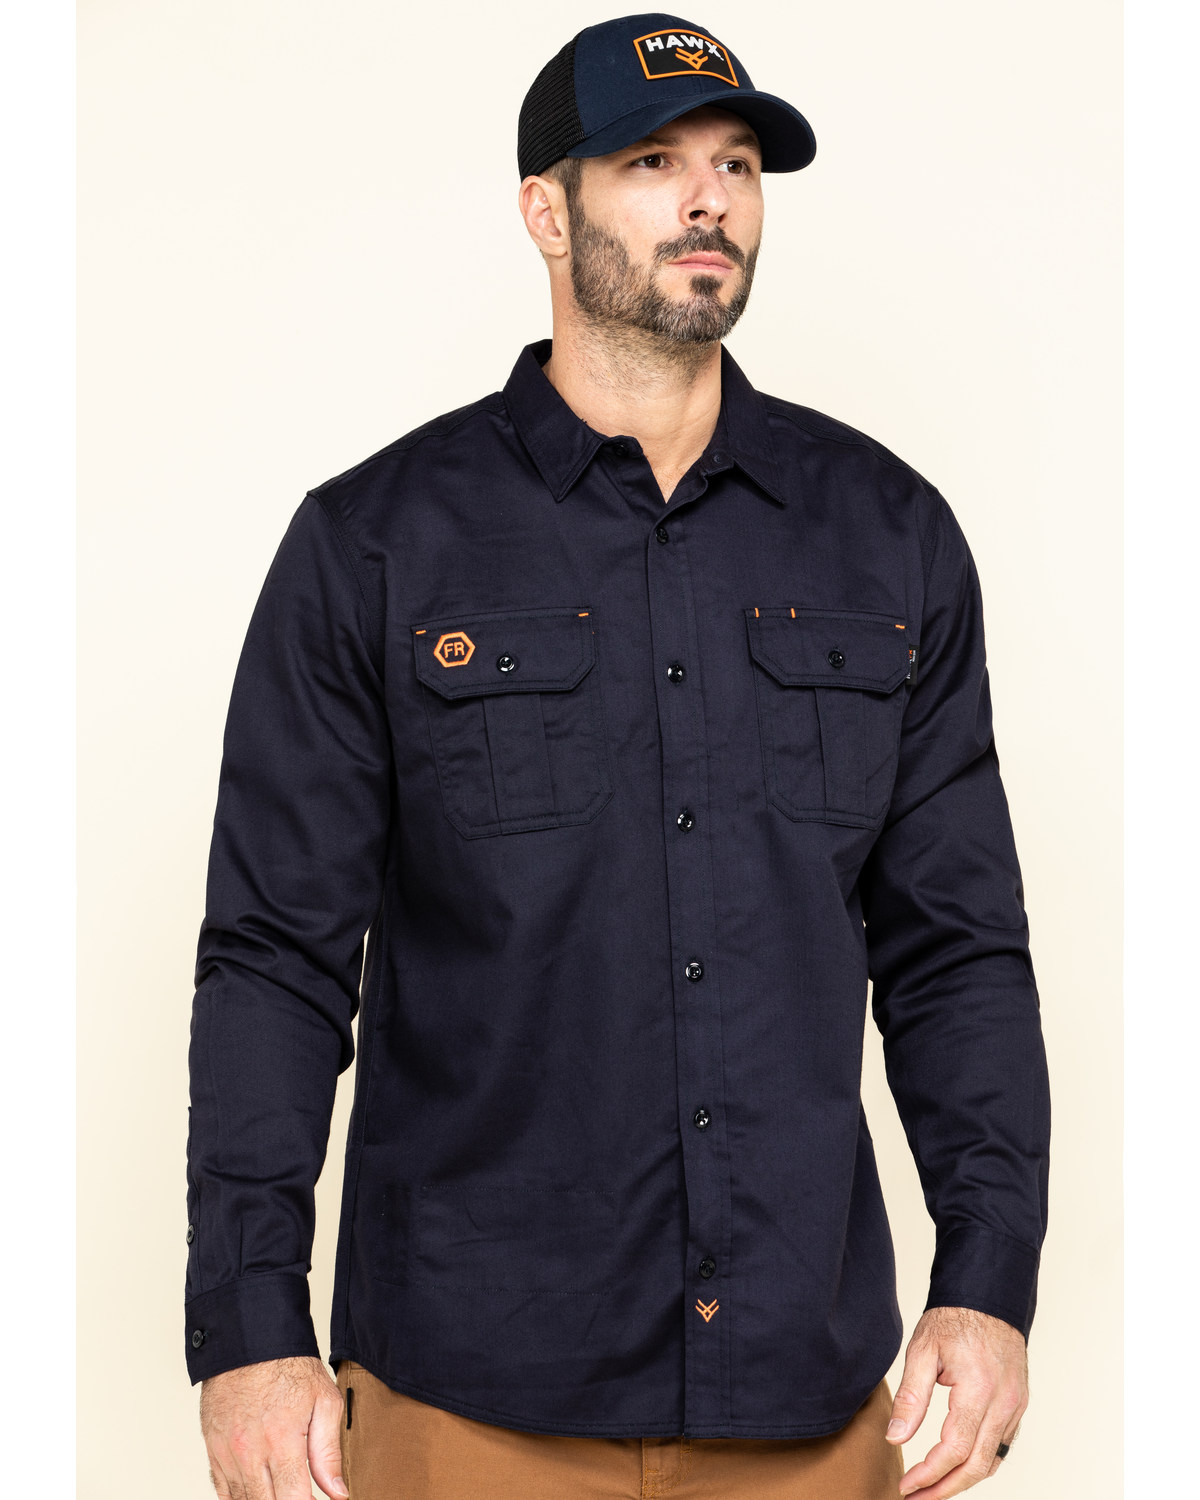 Hawx Men's FR Long Sleeve Button-Down Work Shirt - Big